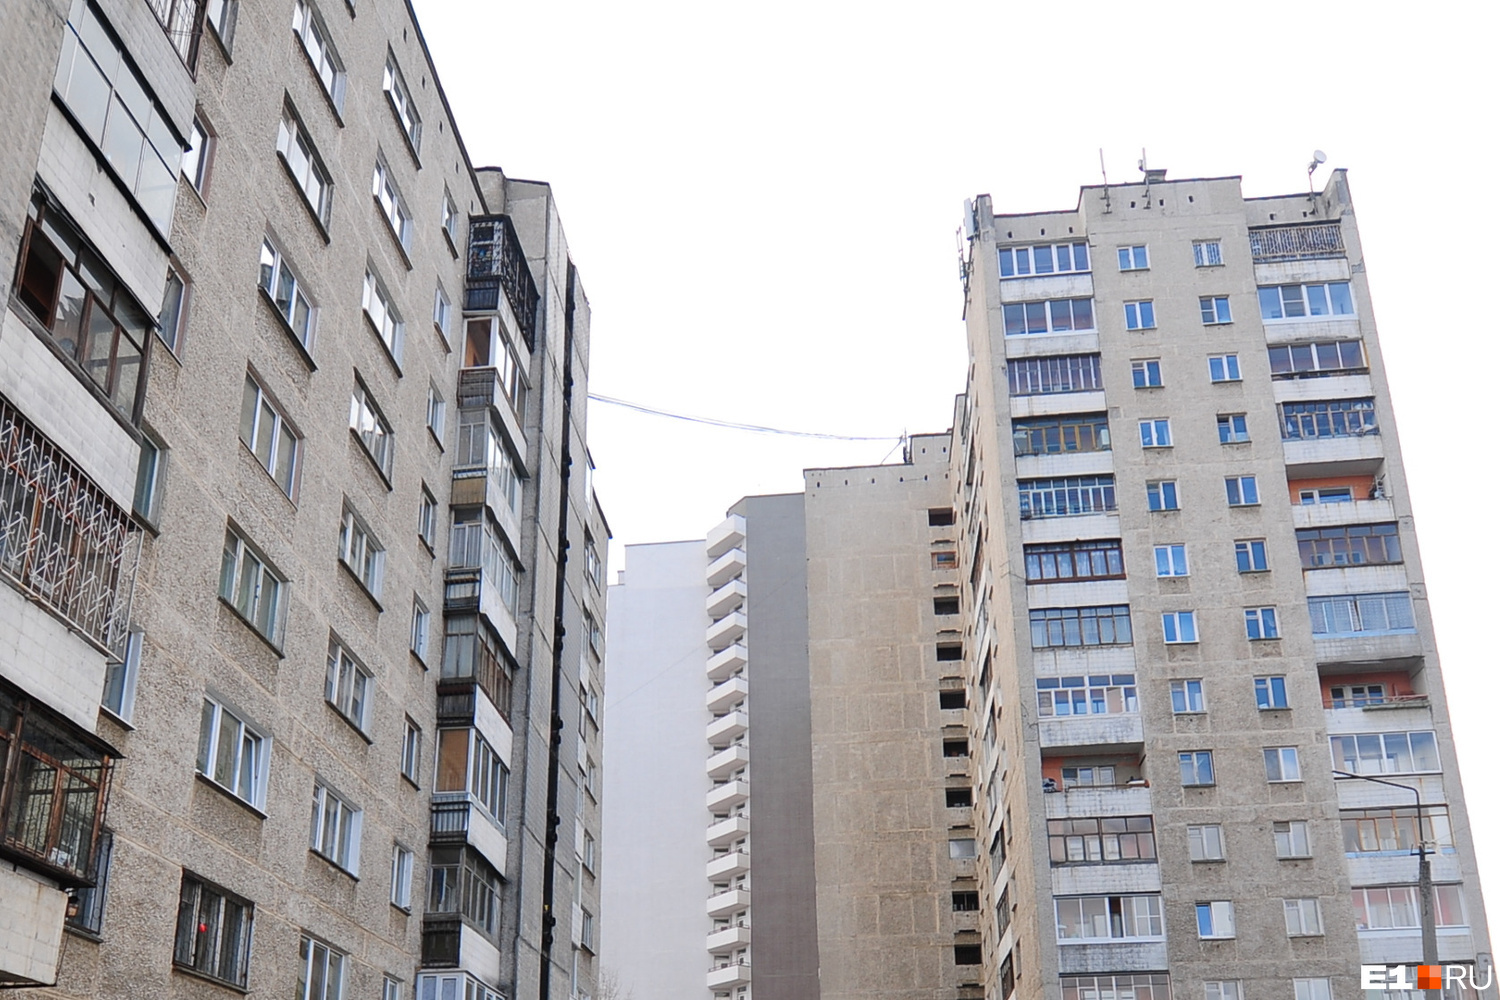 Цены на жилье в Екатеринбурге достигли рекордных отметок. Когда это закончится?